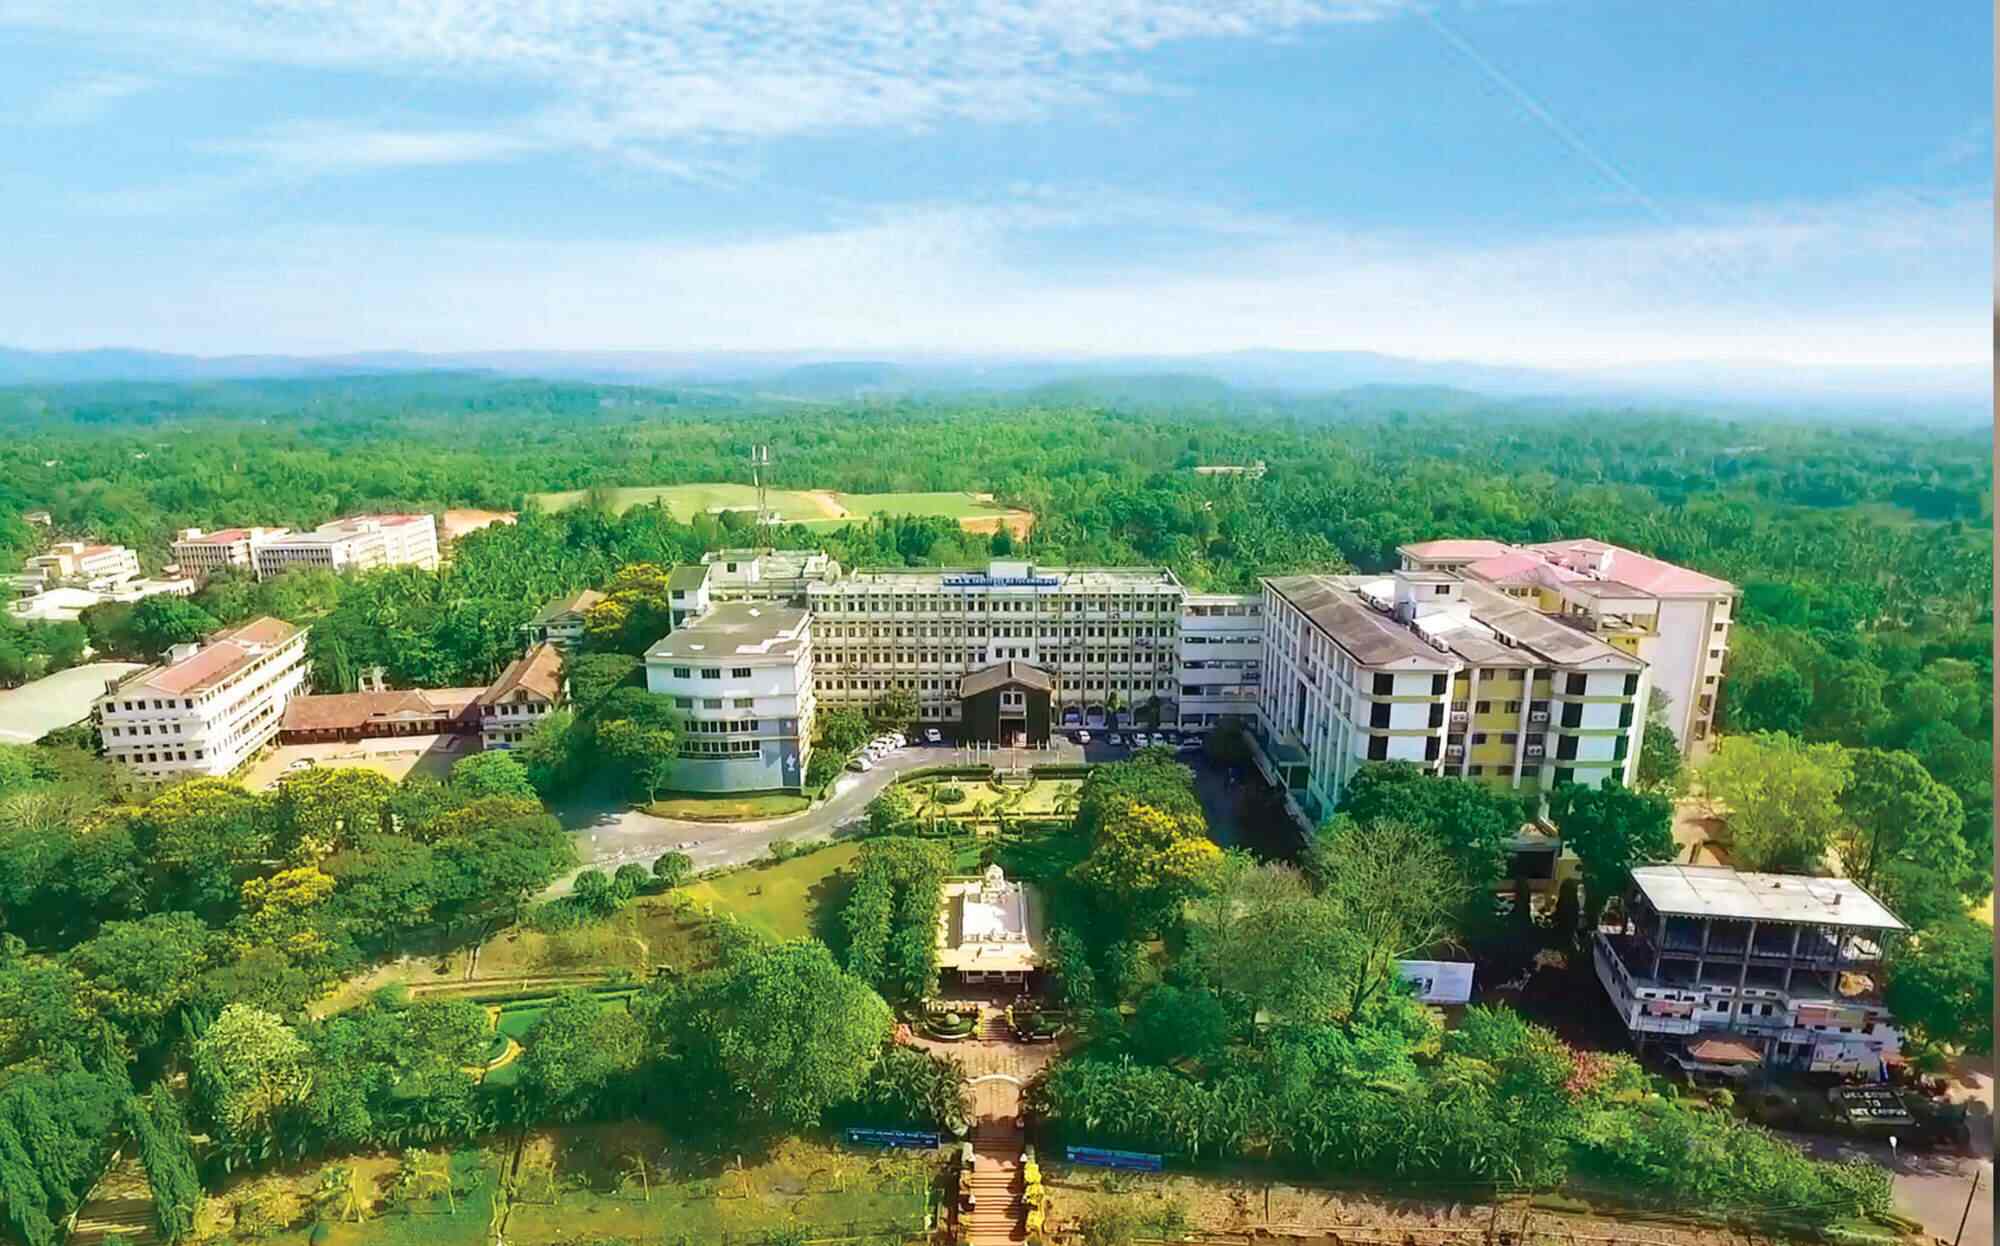 NITTE University, Mangalore